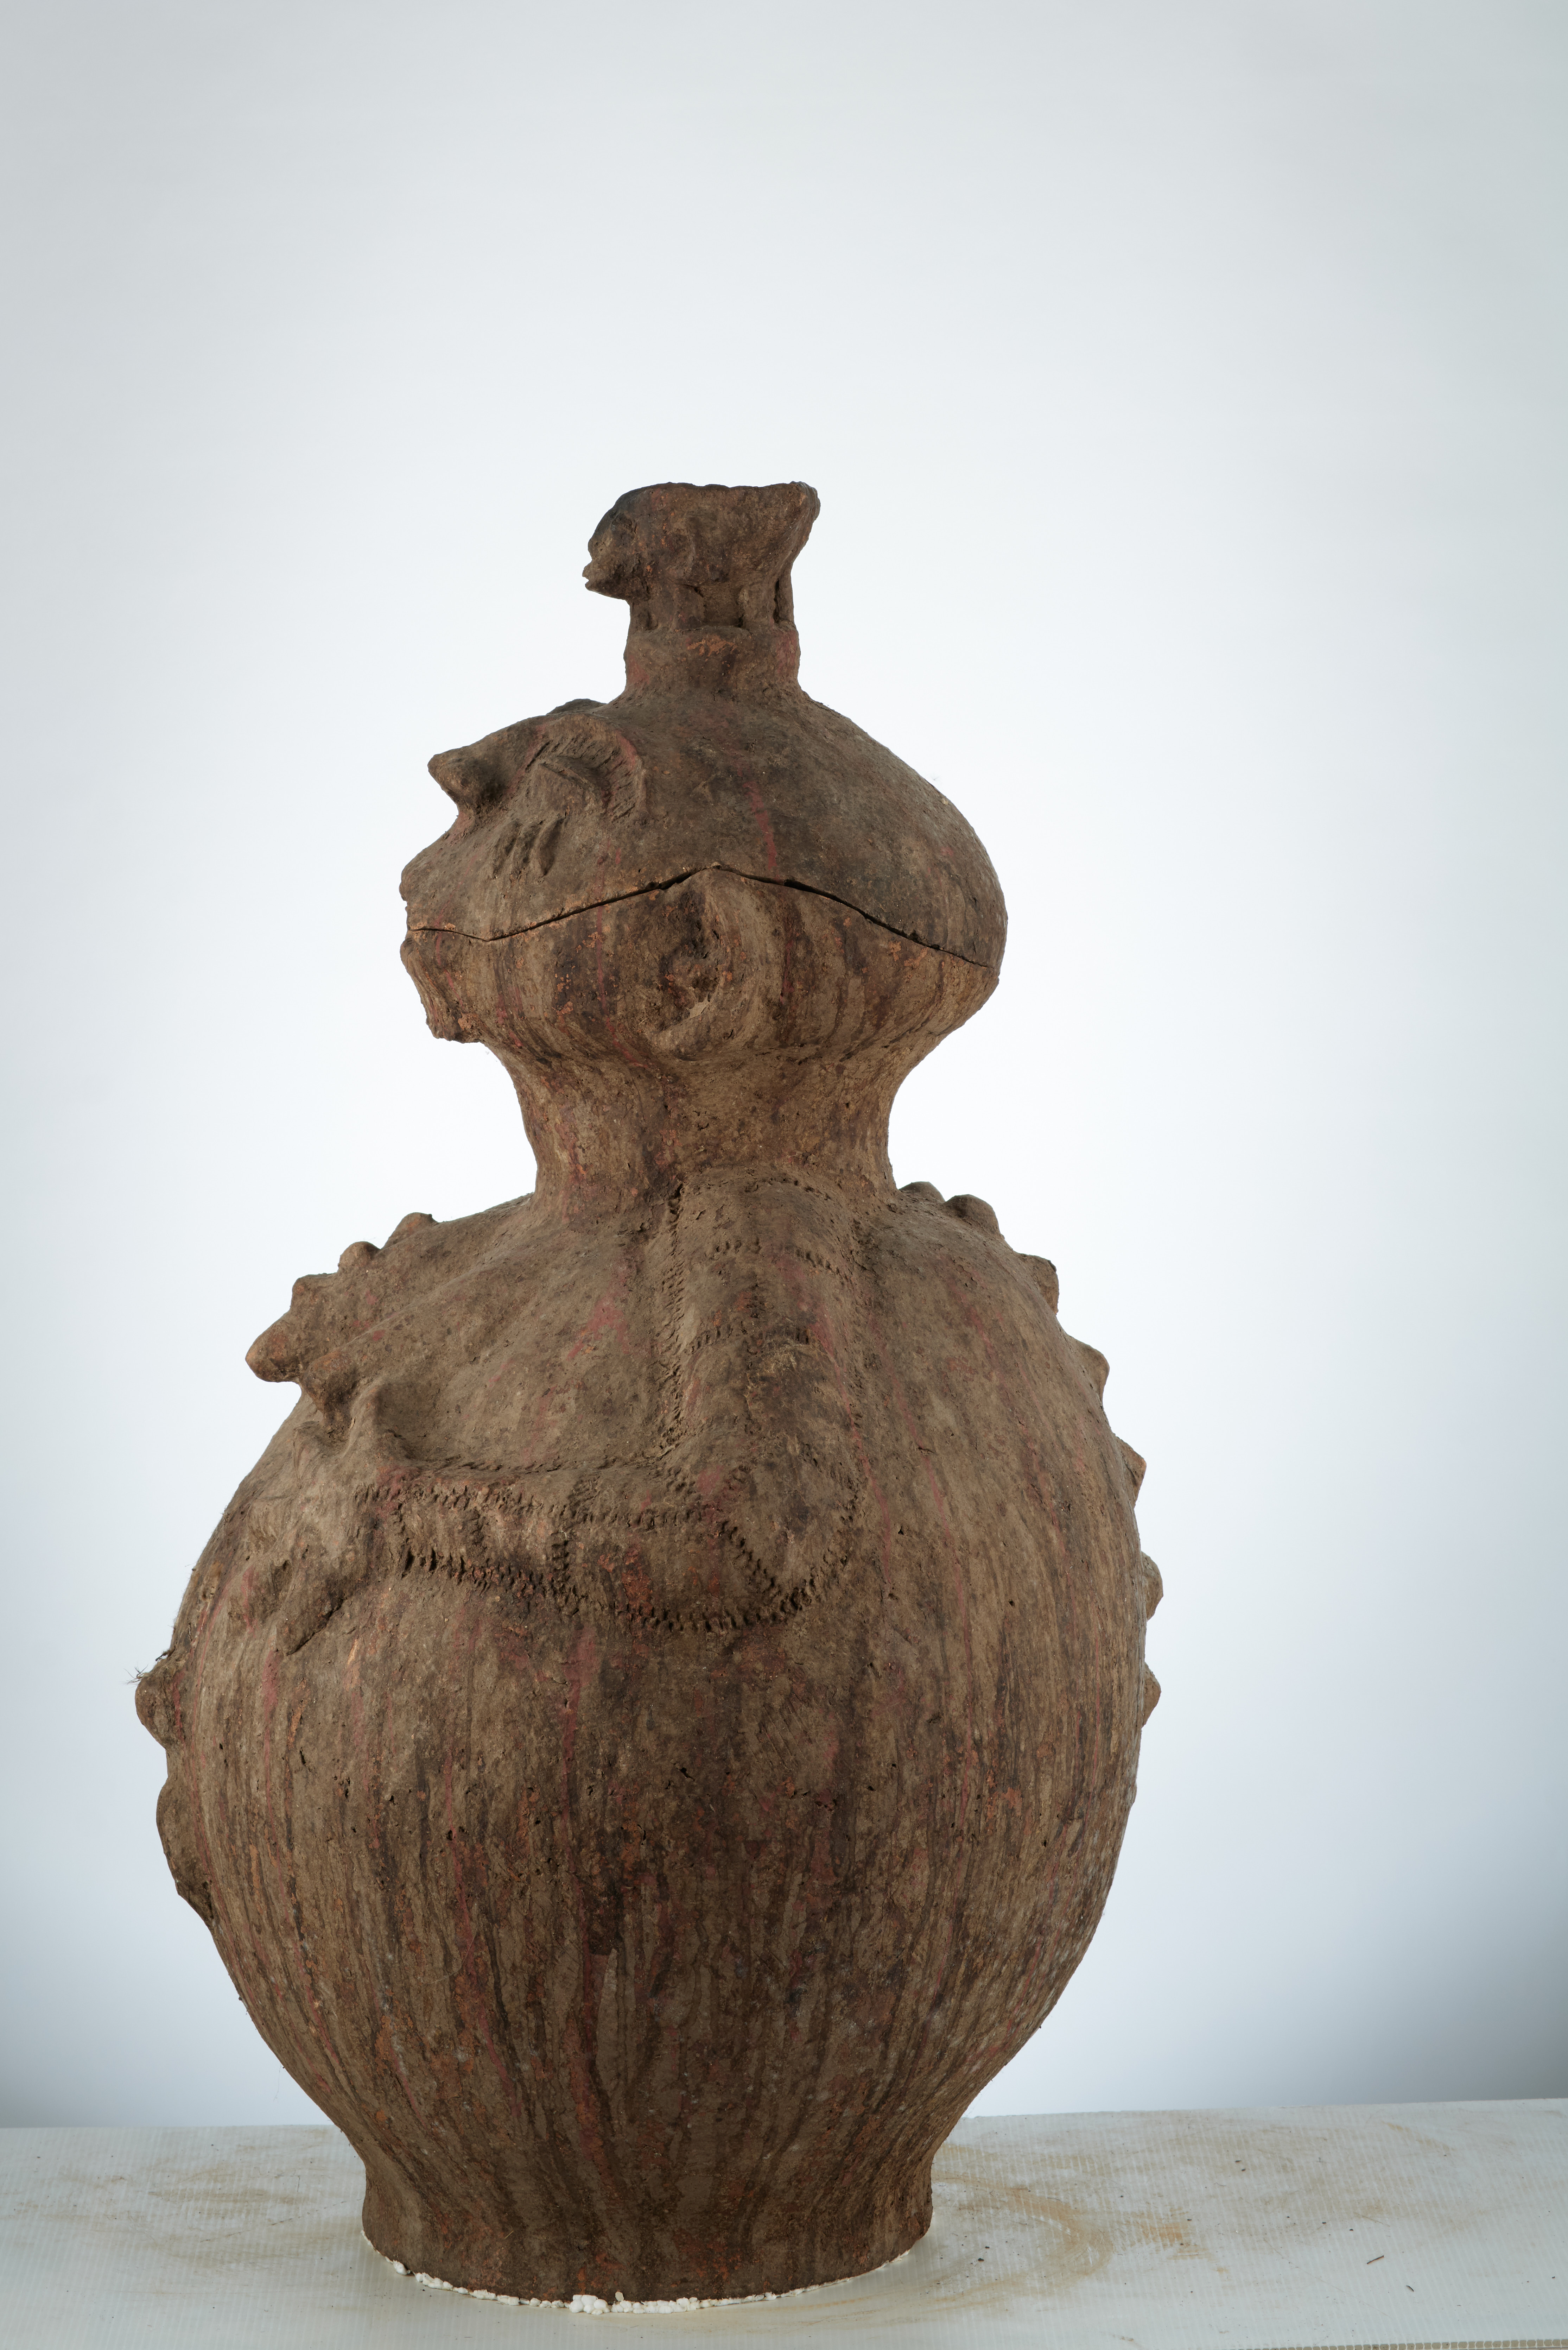 Mossi( vases à couvercle), d`afrique : Burkina Fasso, statuette Mossi( vases à couvercle), masque ancien africain Mossi( vases à couvercle), art du Burkina Fasso - Art Africain, collection privées Belgique. Statue africaine de la tribu des Mossi( vases à couvercle), provenant du Burkina Fasso, 1906:Fétiche Mossi anthropomorphe en terre cuite.Une caraffe  représentant une ancêtre Sur la tête un couvercle avec un récipiant pour recevoir les offrandes.Les bras soutiennent les seins Le vagin est bien visible.Le fétiche a subit beaucoup de libations.Voir n°1905 (col. Simon Duchastel de la Howarderie.). art,culture,masque,statue,statuette,pot,ivoire,exposition,expo,masque original,masques,statues,statuettes,pots,expositions,expo,masques originaux,collectionneur d`art,art africain,culture africaine,masque africain,statue africaine,statuette africaine,pot africain,ivoire africain,exposition africain,expo africain,masque origina africainl,masques africains,statues africaines,statuettes africaines,pots africains,expositions africaines,expo africaines,masques originaux  africains,collectionneur d`art africain